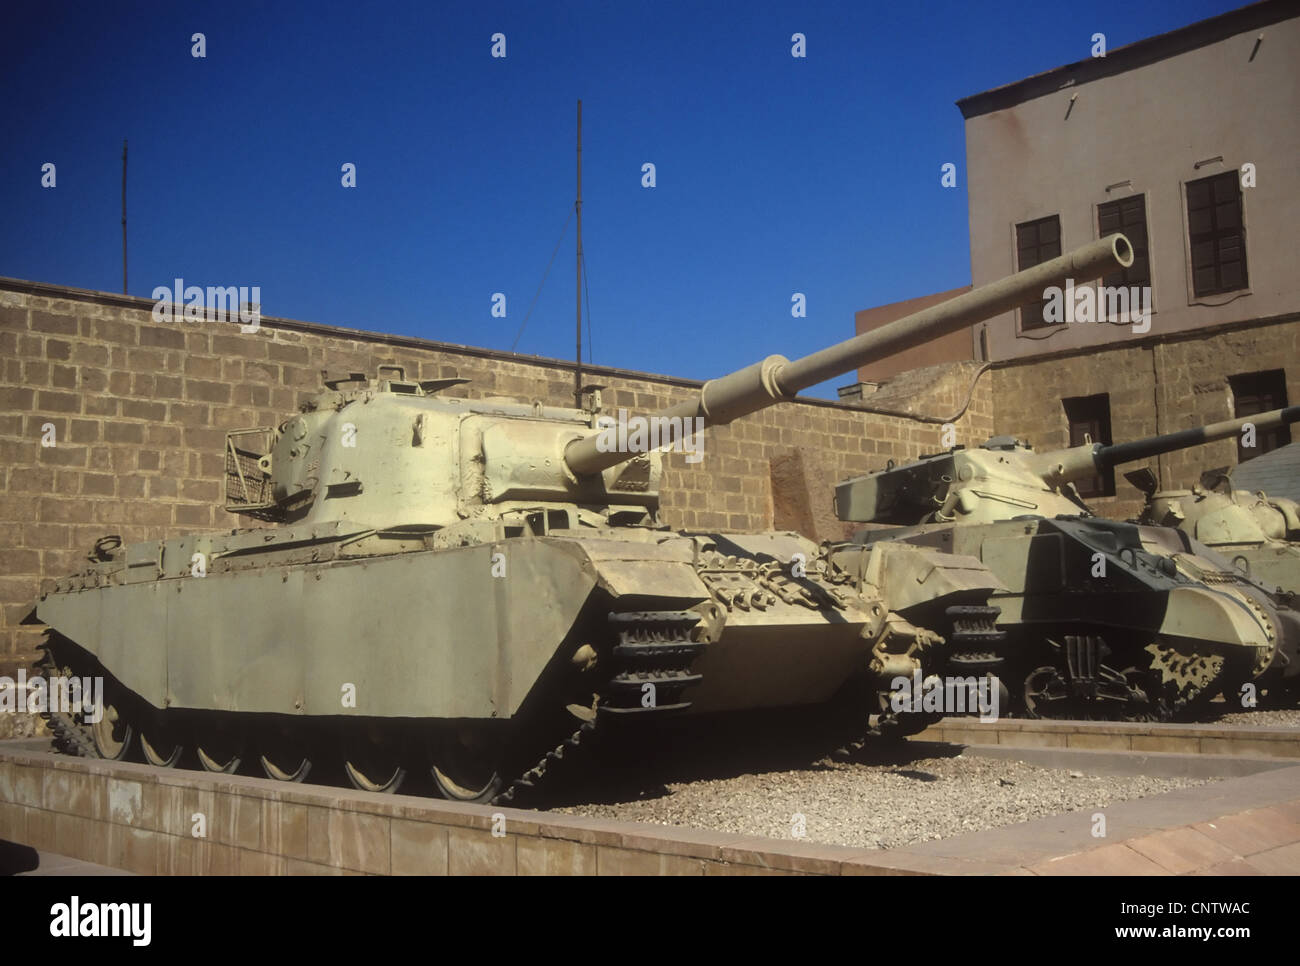 British Centurion serbatoio, originariamente dalla II guerra mondiale, poi utilizzato in Arabo - guerre israeliane, Museo Militare, CitadelCairoEgypt, Midd Foto Stock